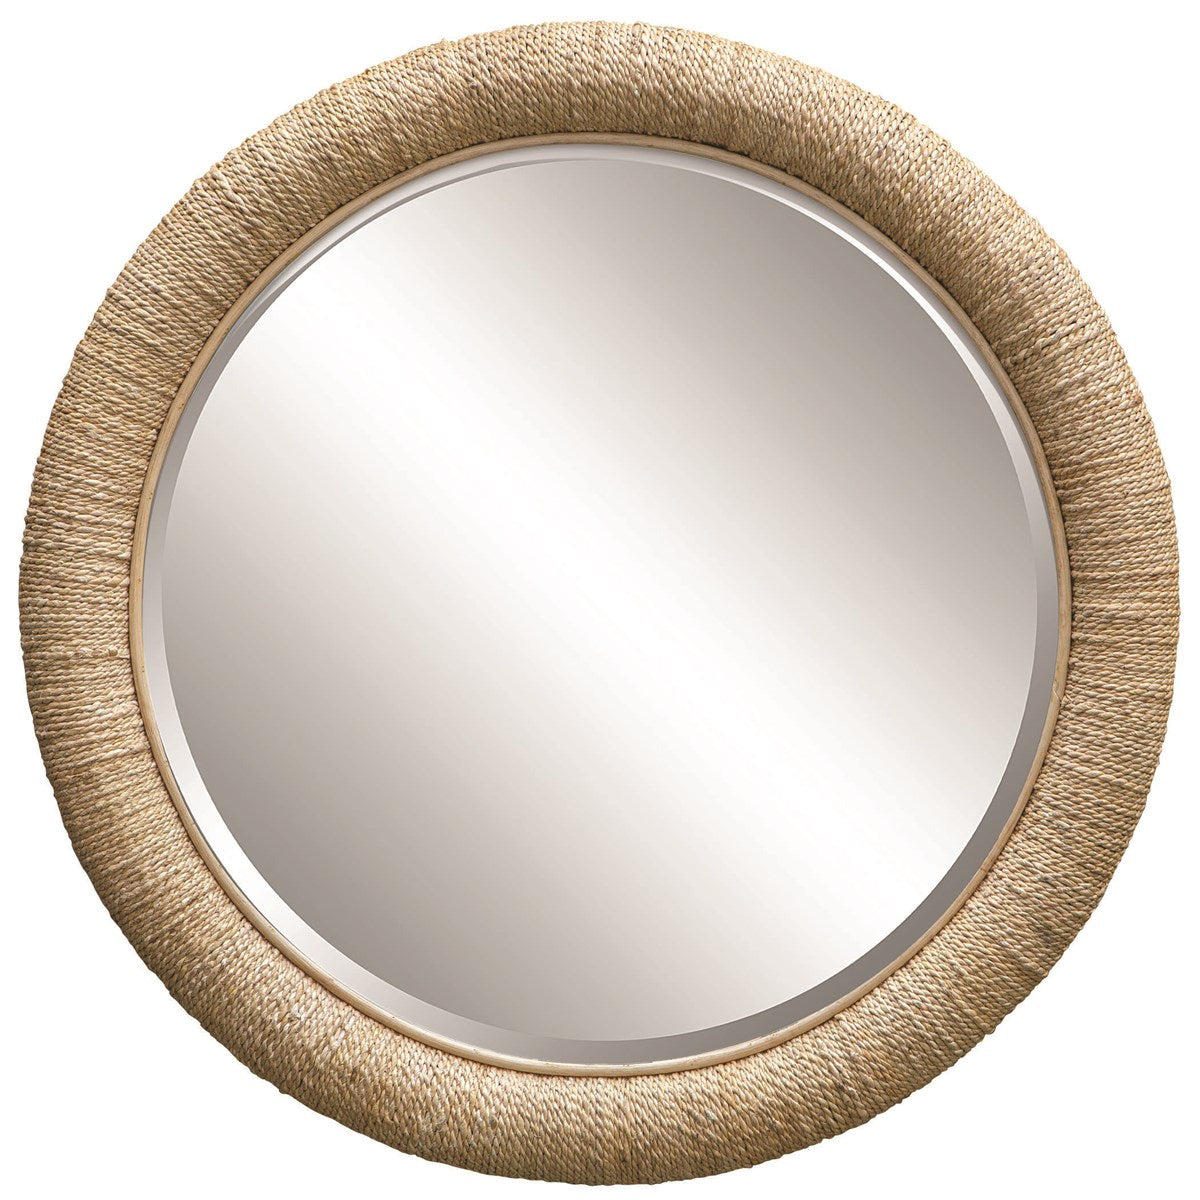 Mariner Round Wall Mirror